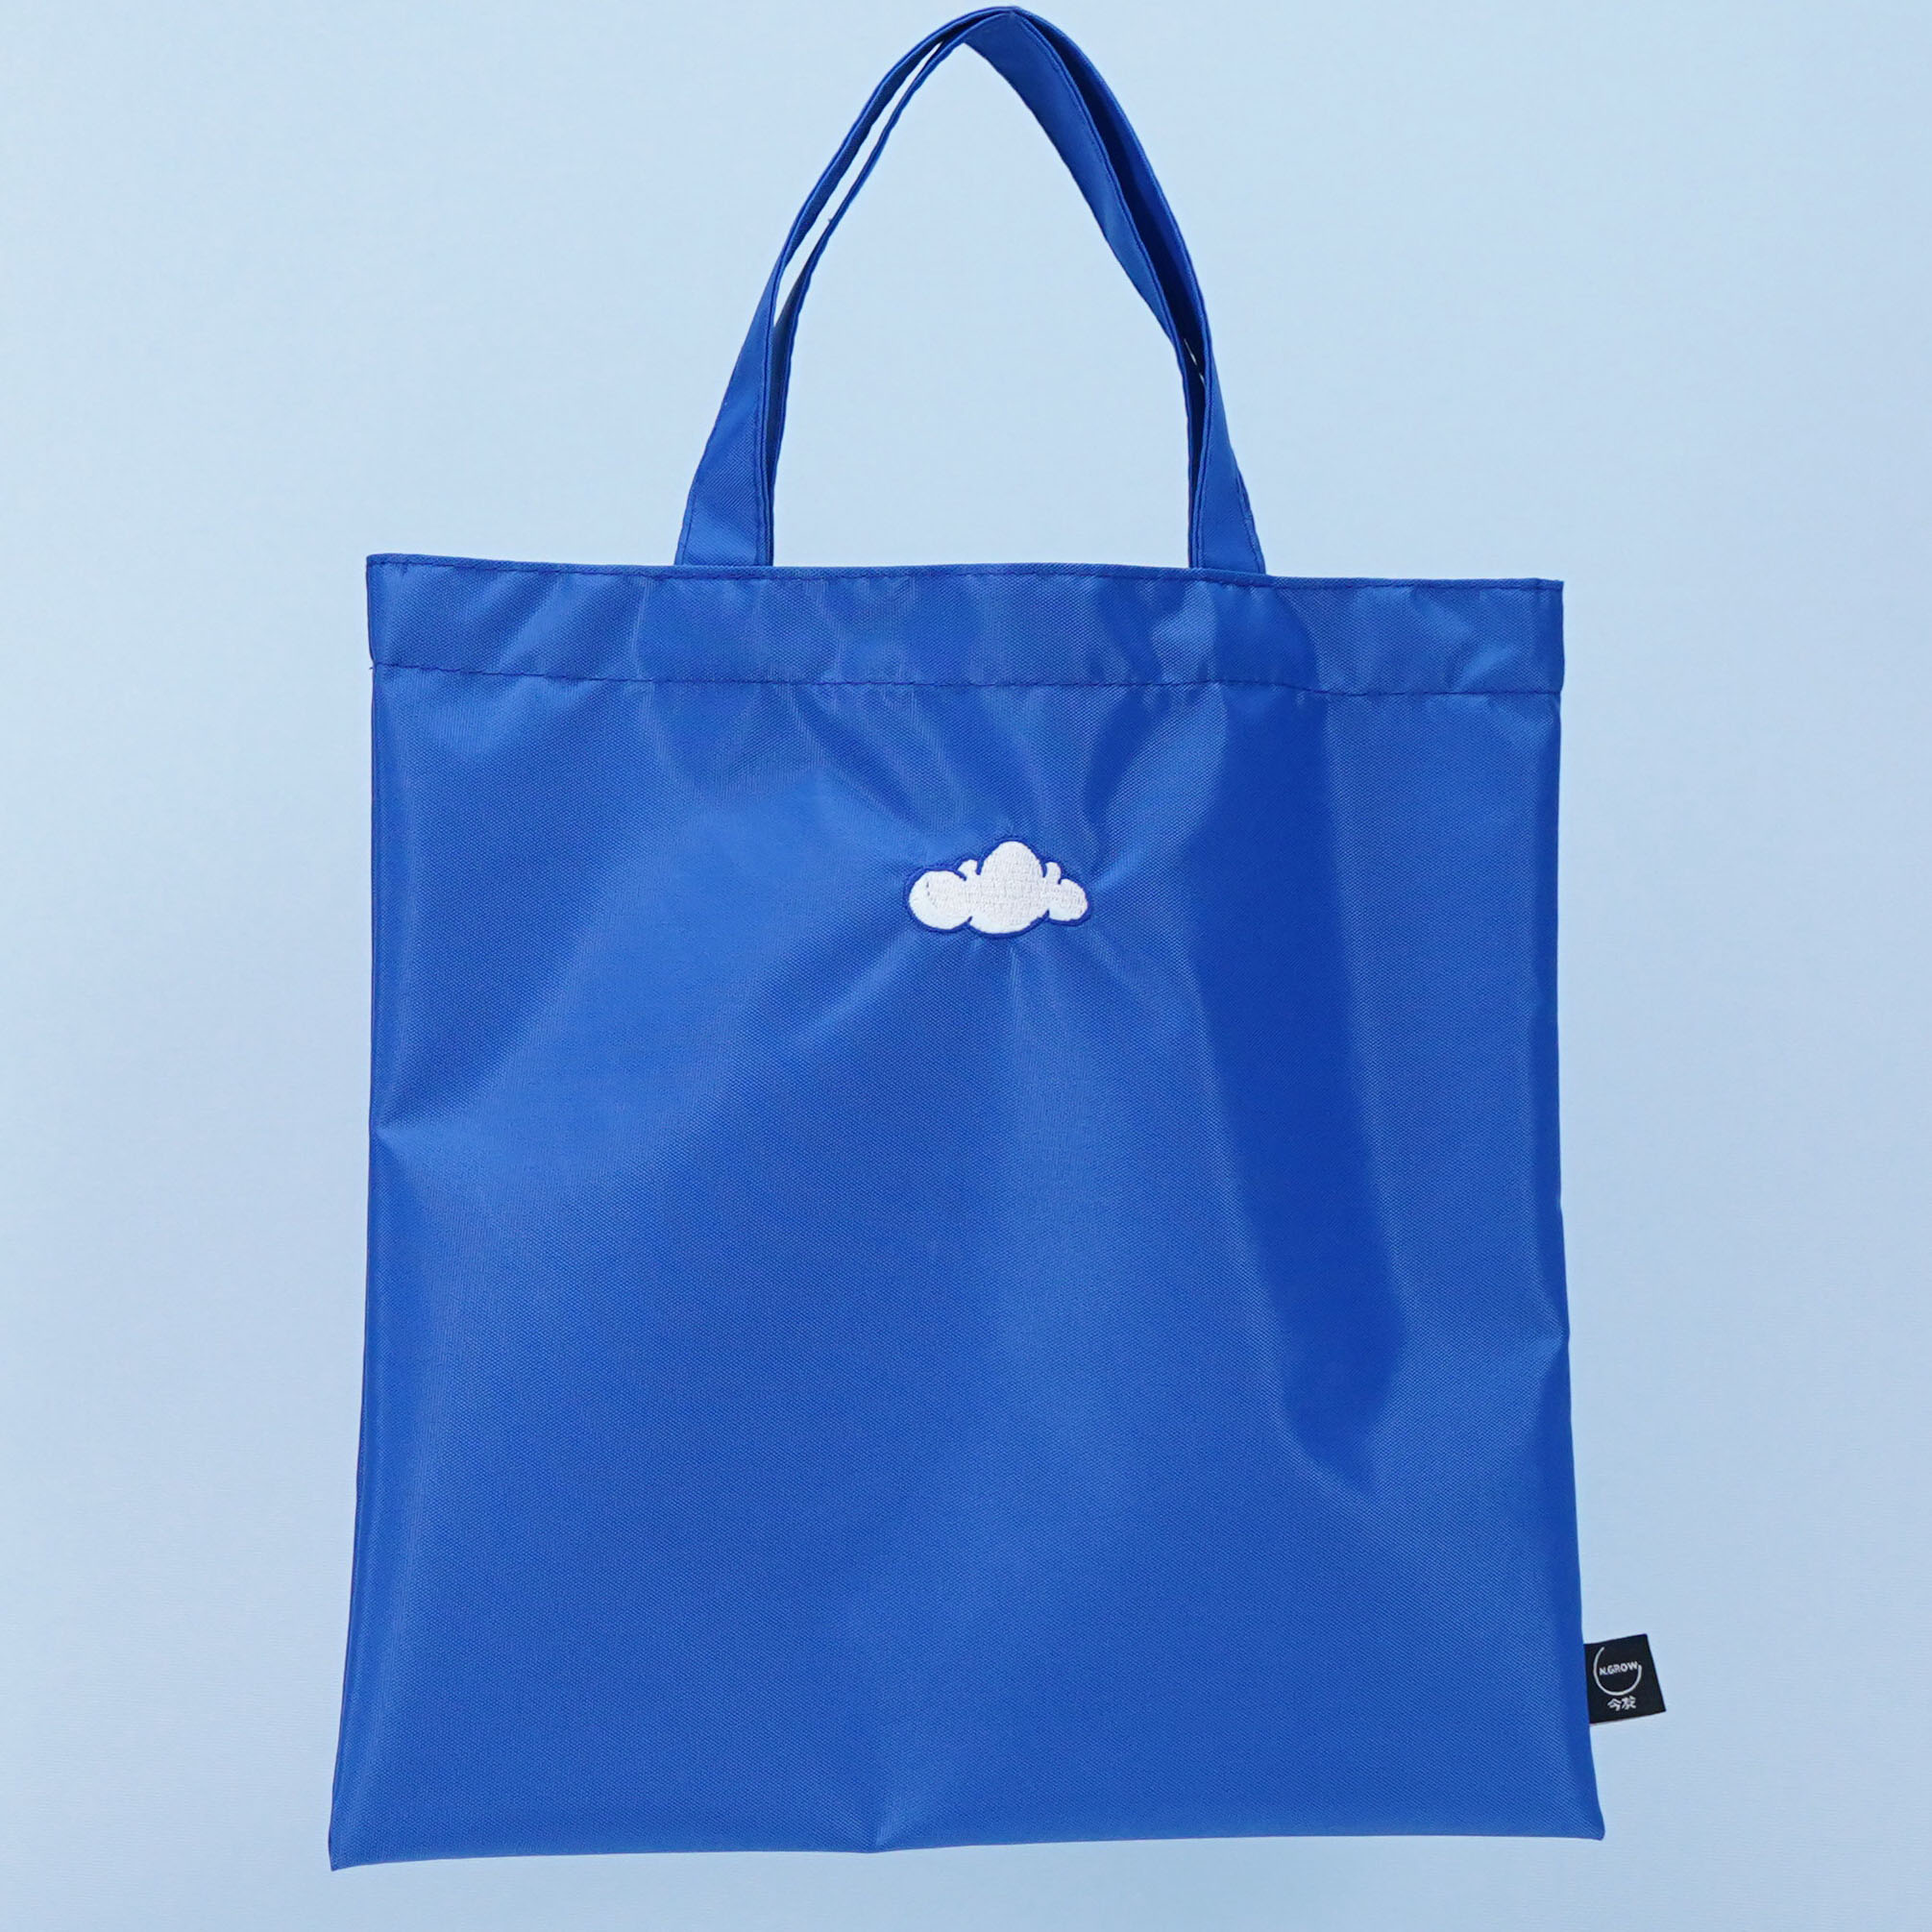 Corak sulaman awan reka bentuk beg tote poliester nilon biru untuk membeli-belah